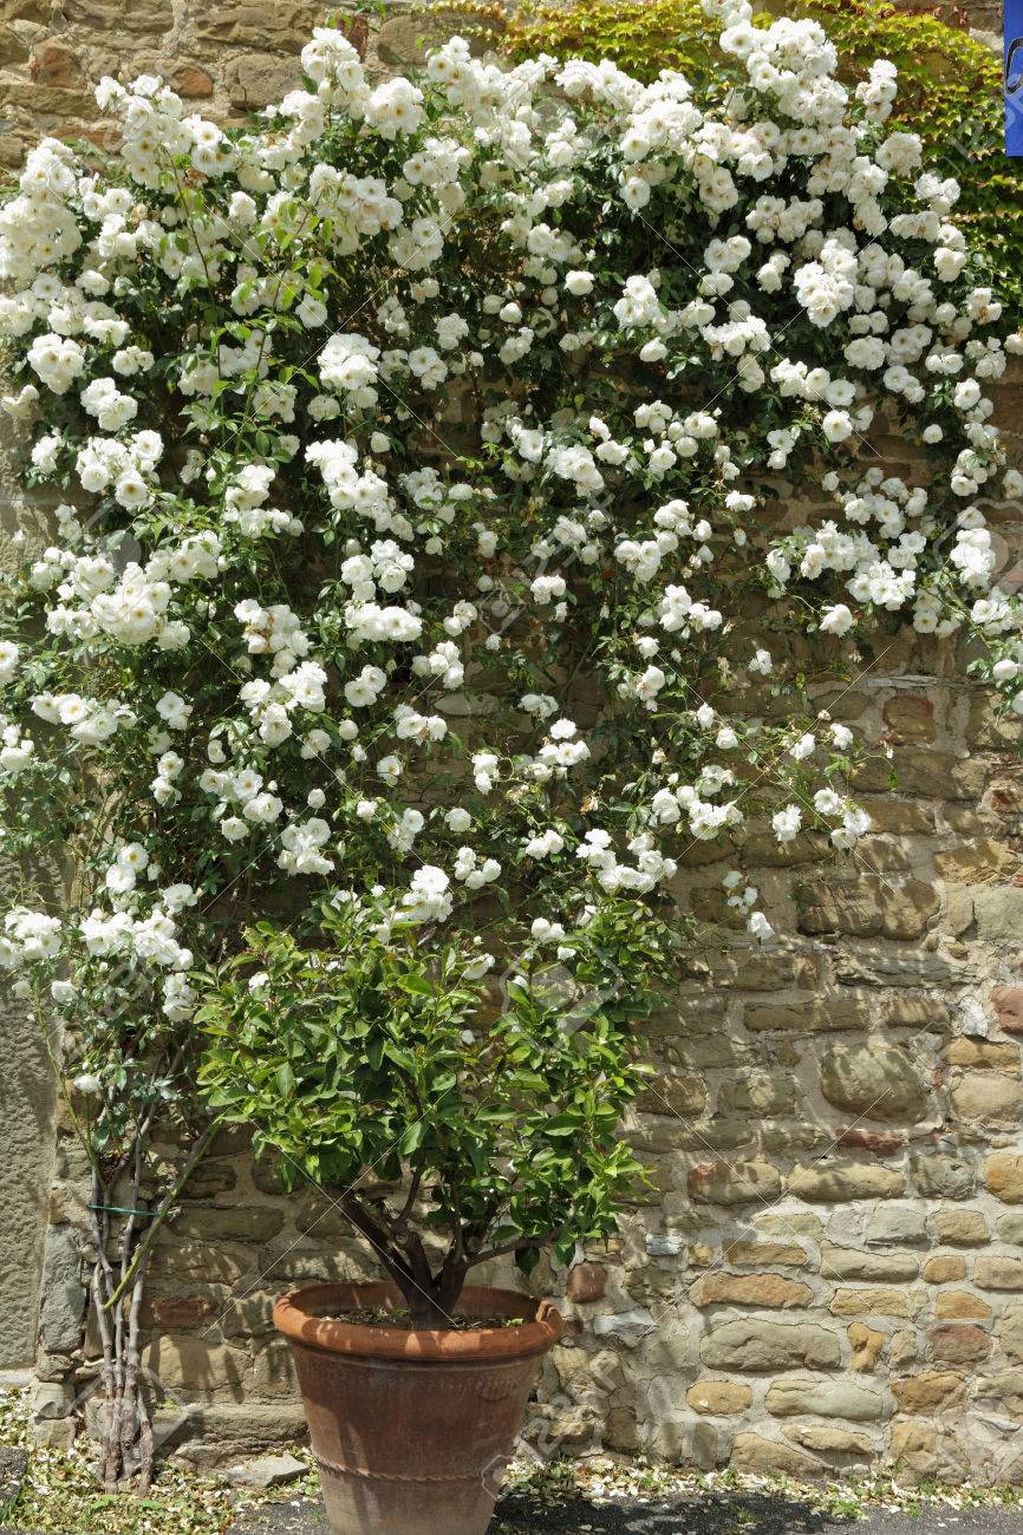 Vistosa y colorida, la rosa trepadora se puede colocar en maceta e irá tomando la forma del espacio que la rodea. Ideal para cubrir paredes de manera elegante.